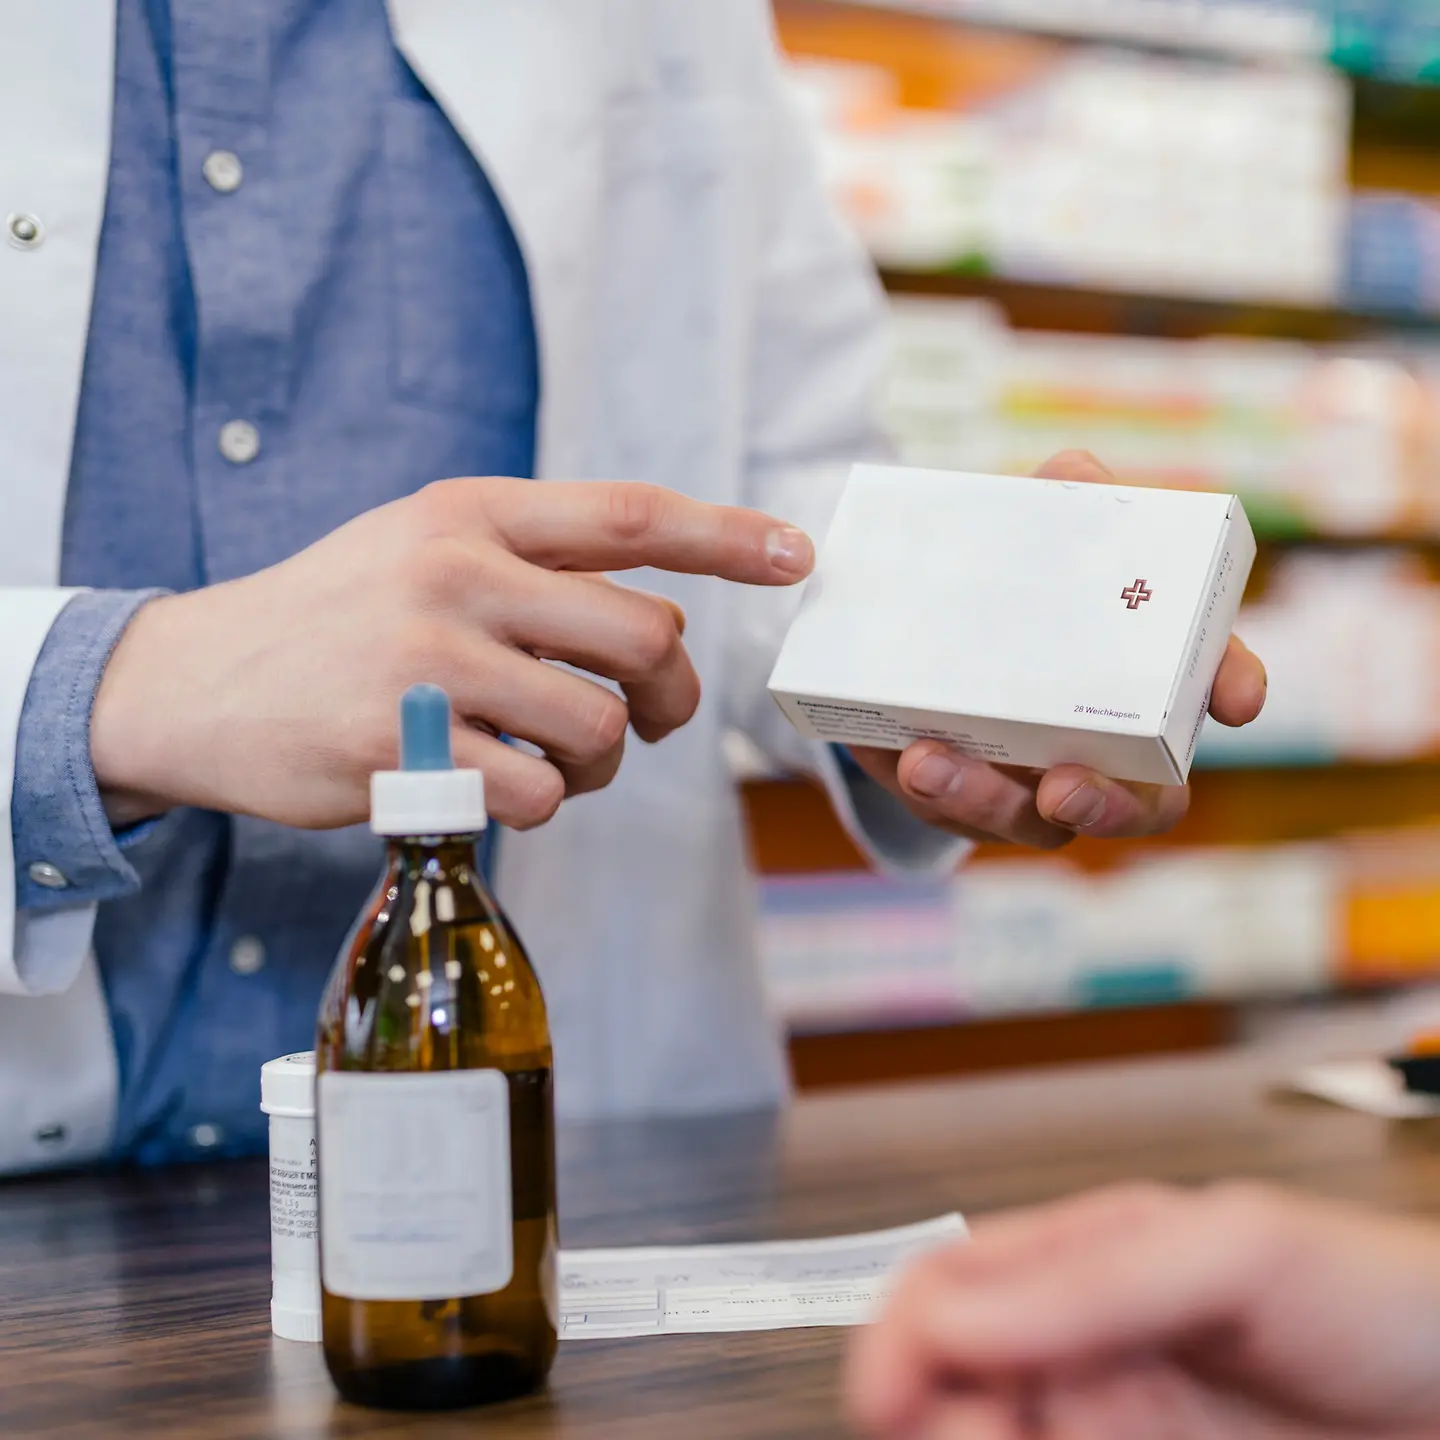 Ein Apotheker zeigt mit seinem Finger auf eine Tablettenverpackung